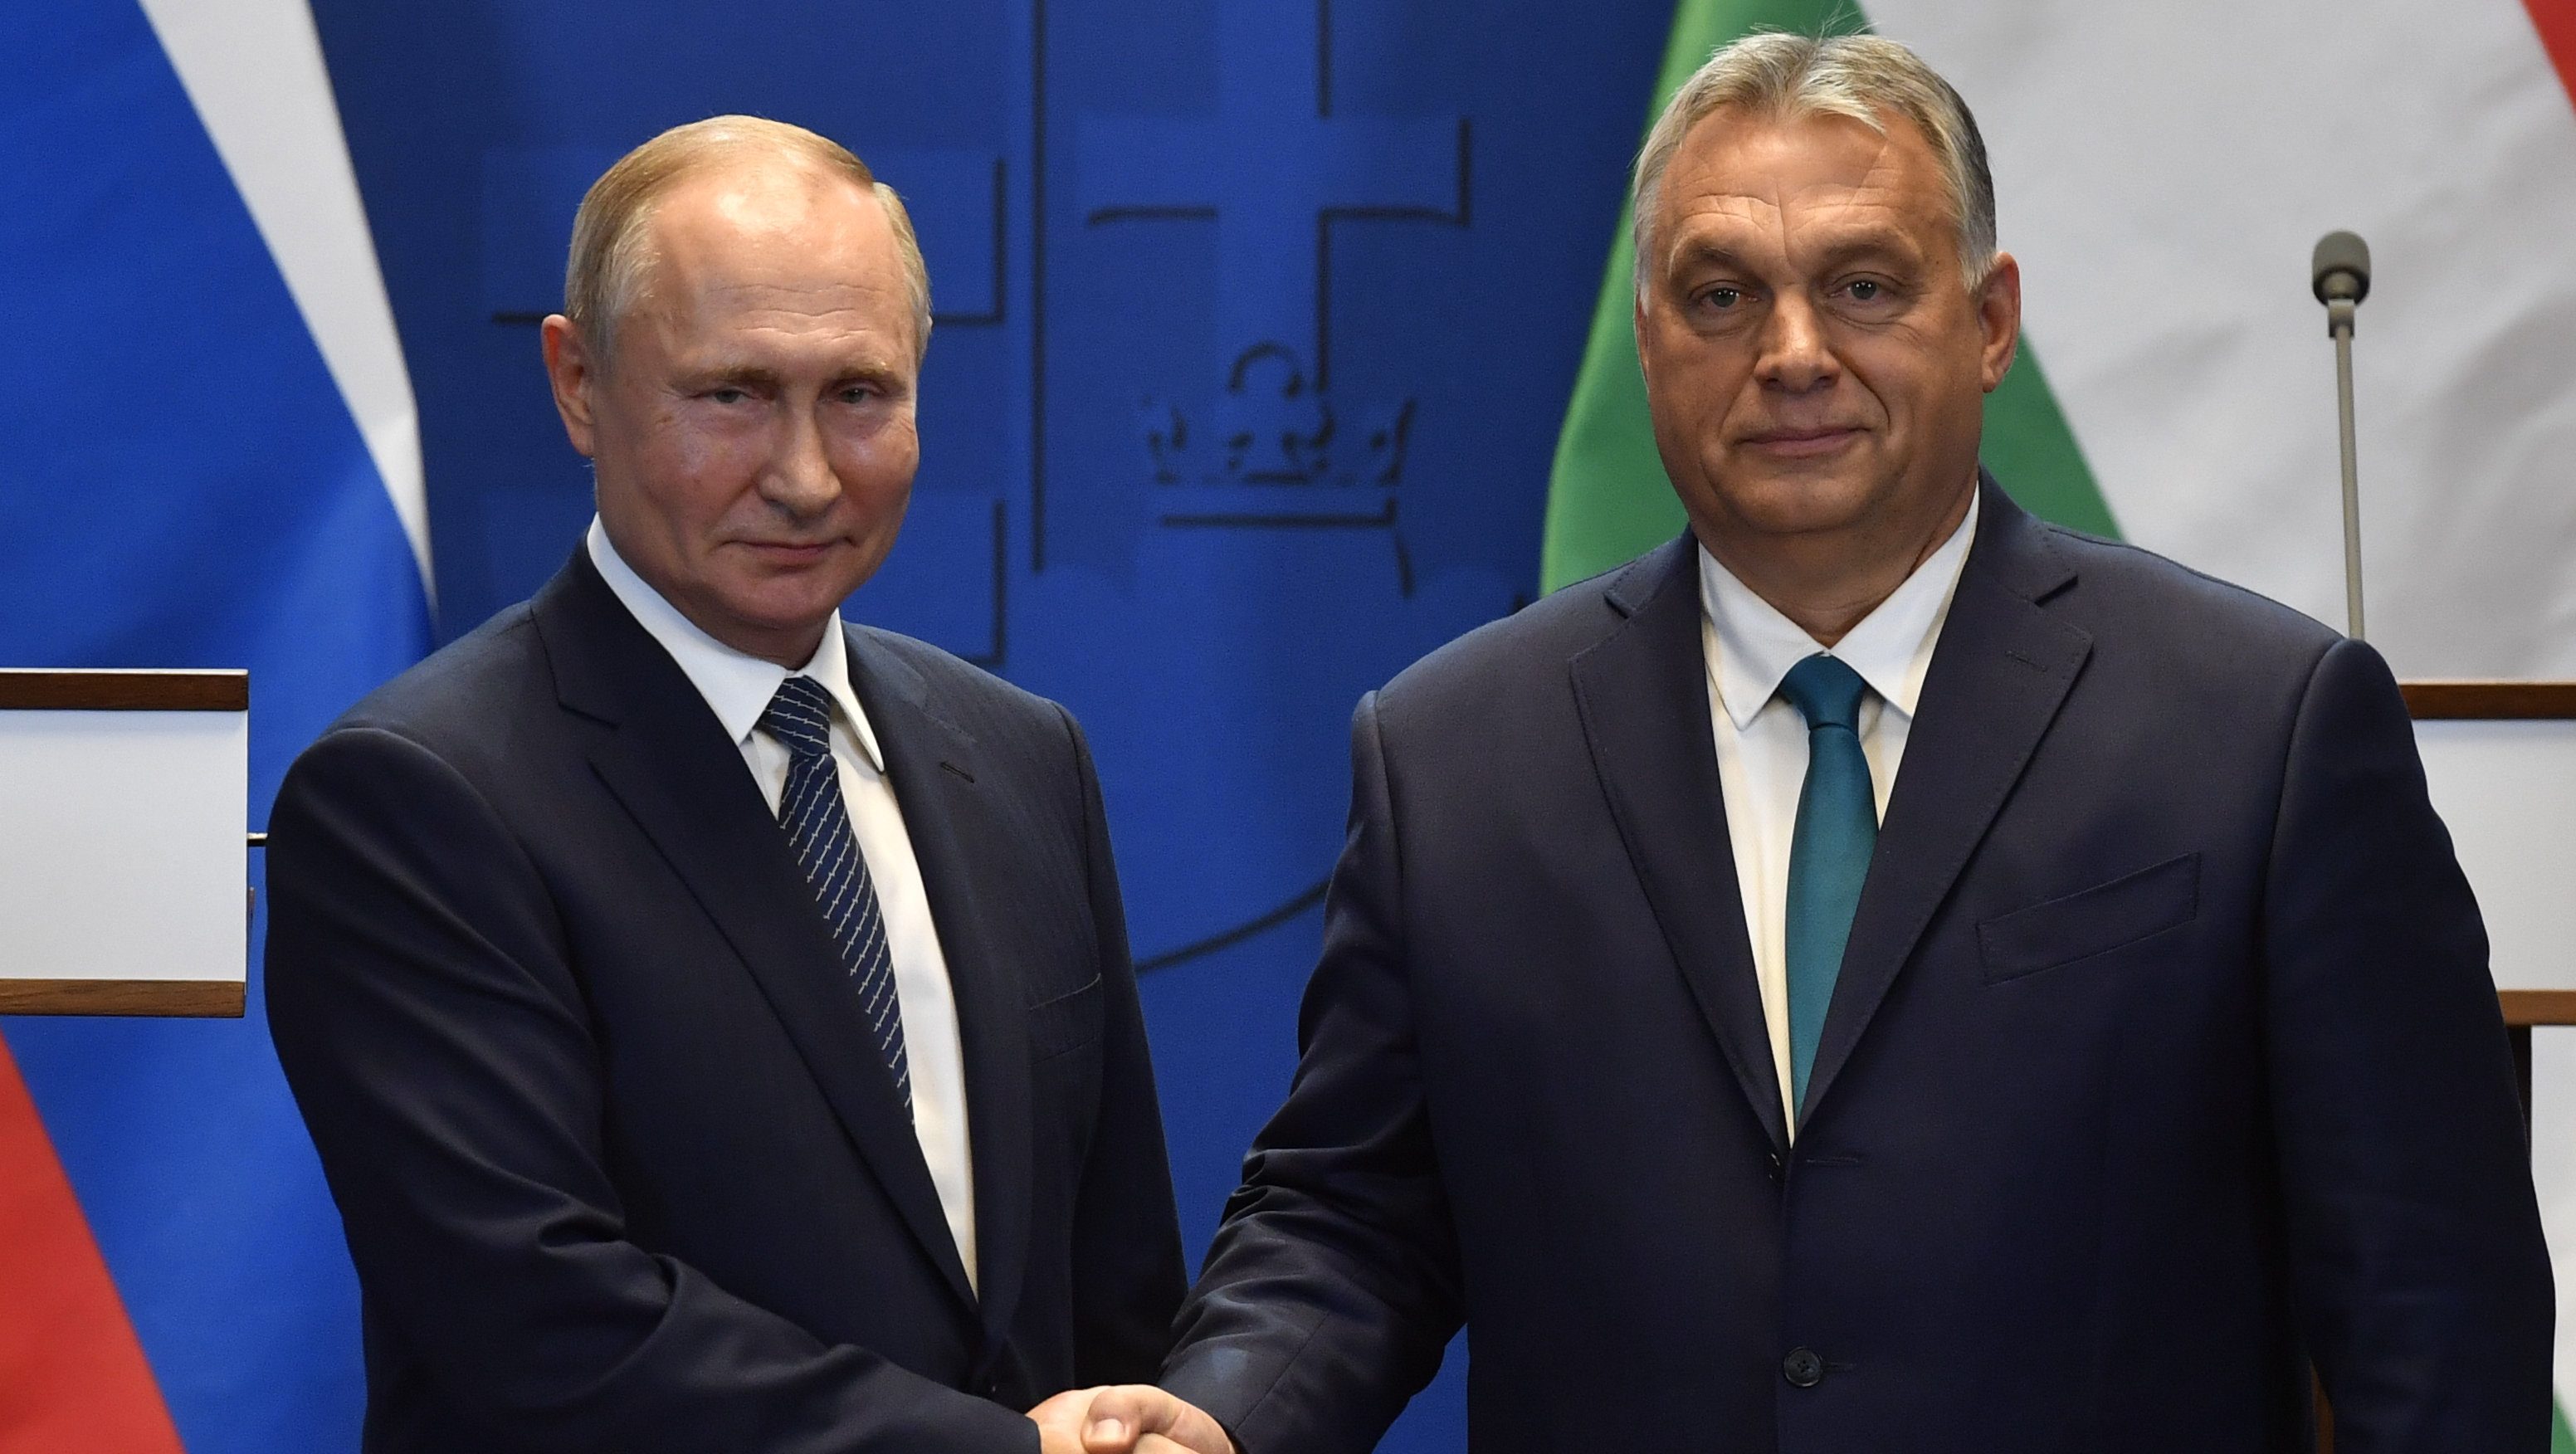 Februárban újra találkozik Orbán és Putyin